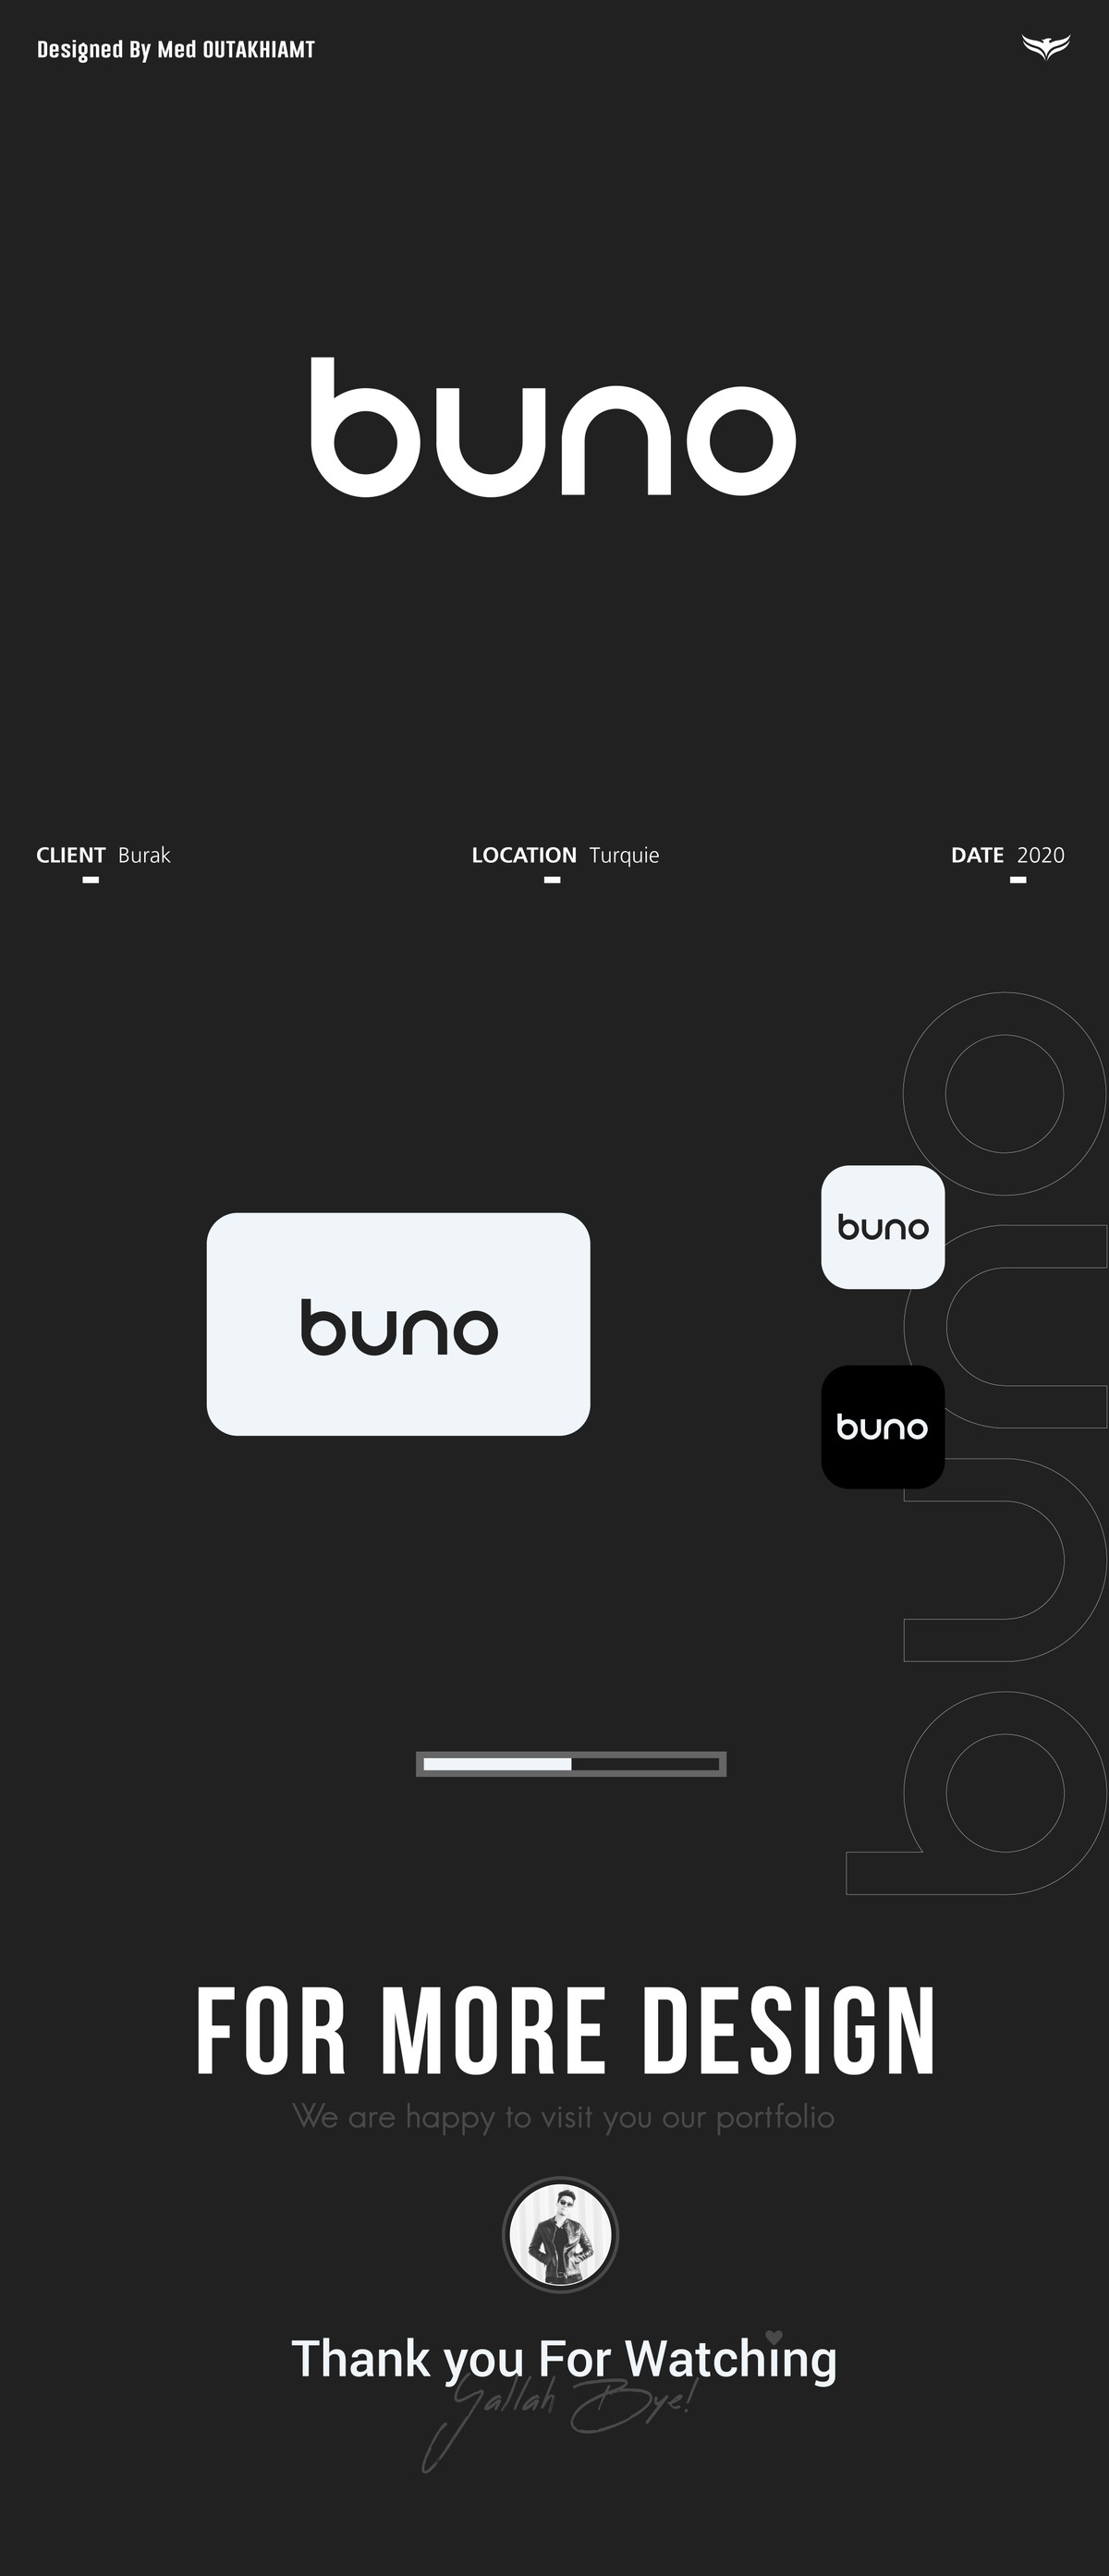 BUNO-LOGO-DESIGN